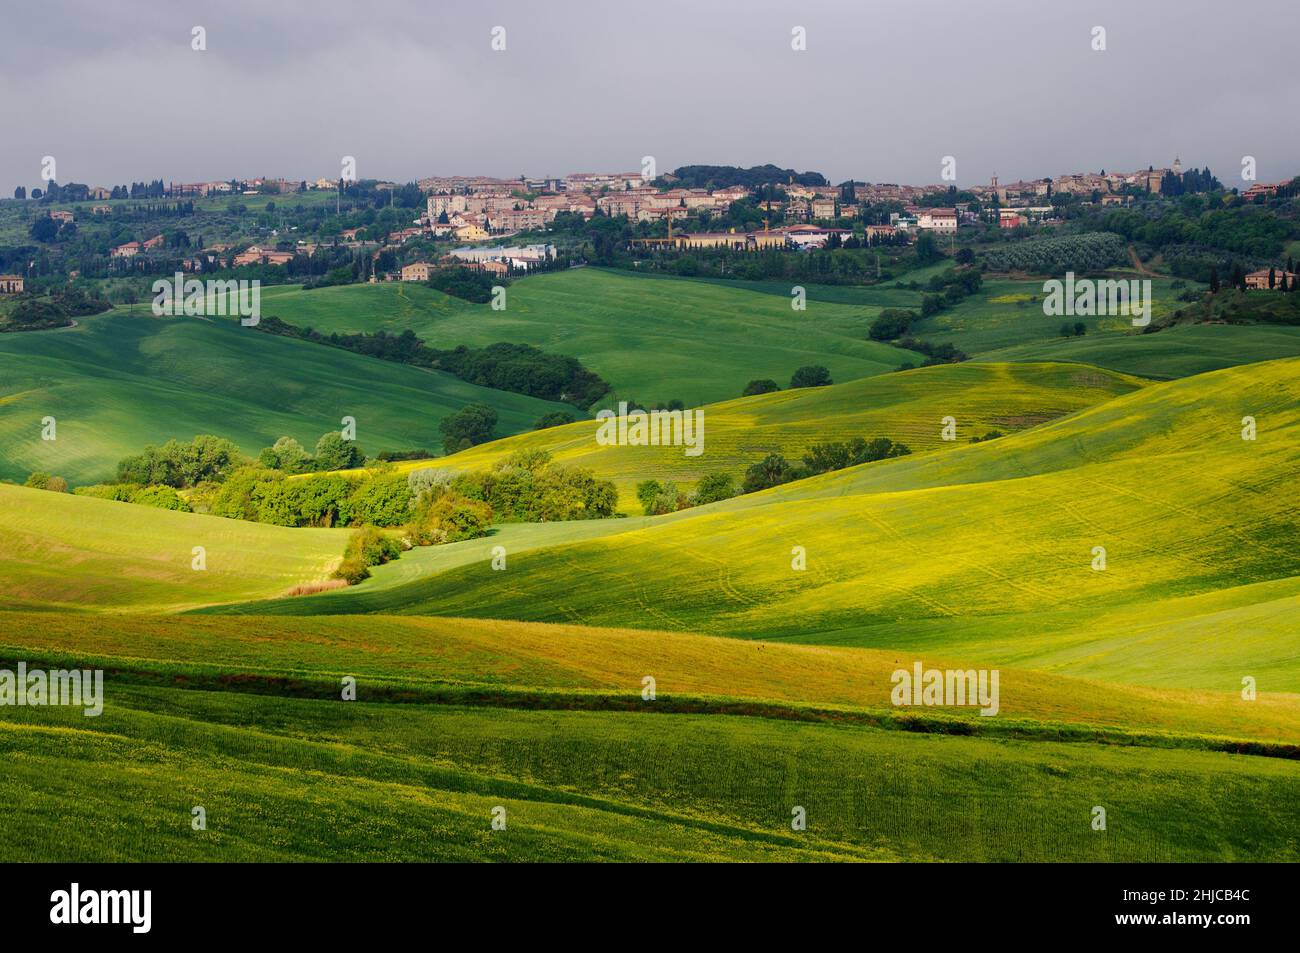 Printemps Toscane.Vue sur les champs verts éclairés par les rayons du soleil.Au loin, vous pouvez voir la ville de San Quirico d'Orcia Banque D'Images